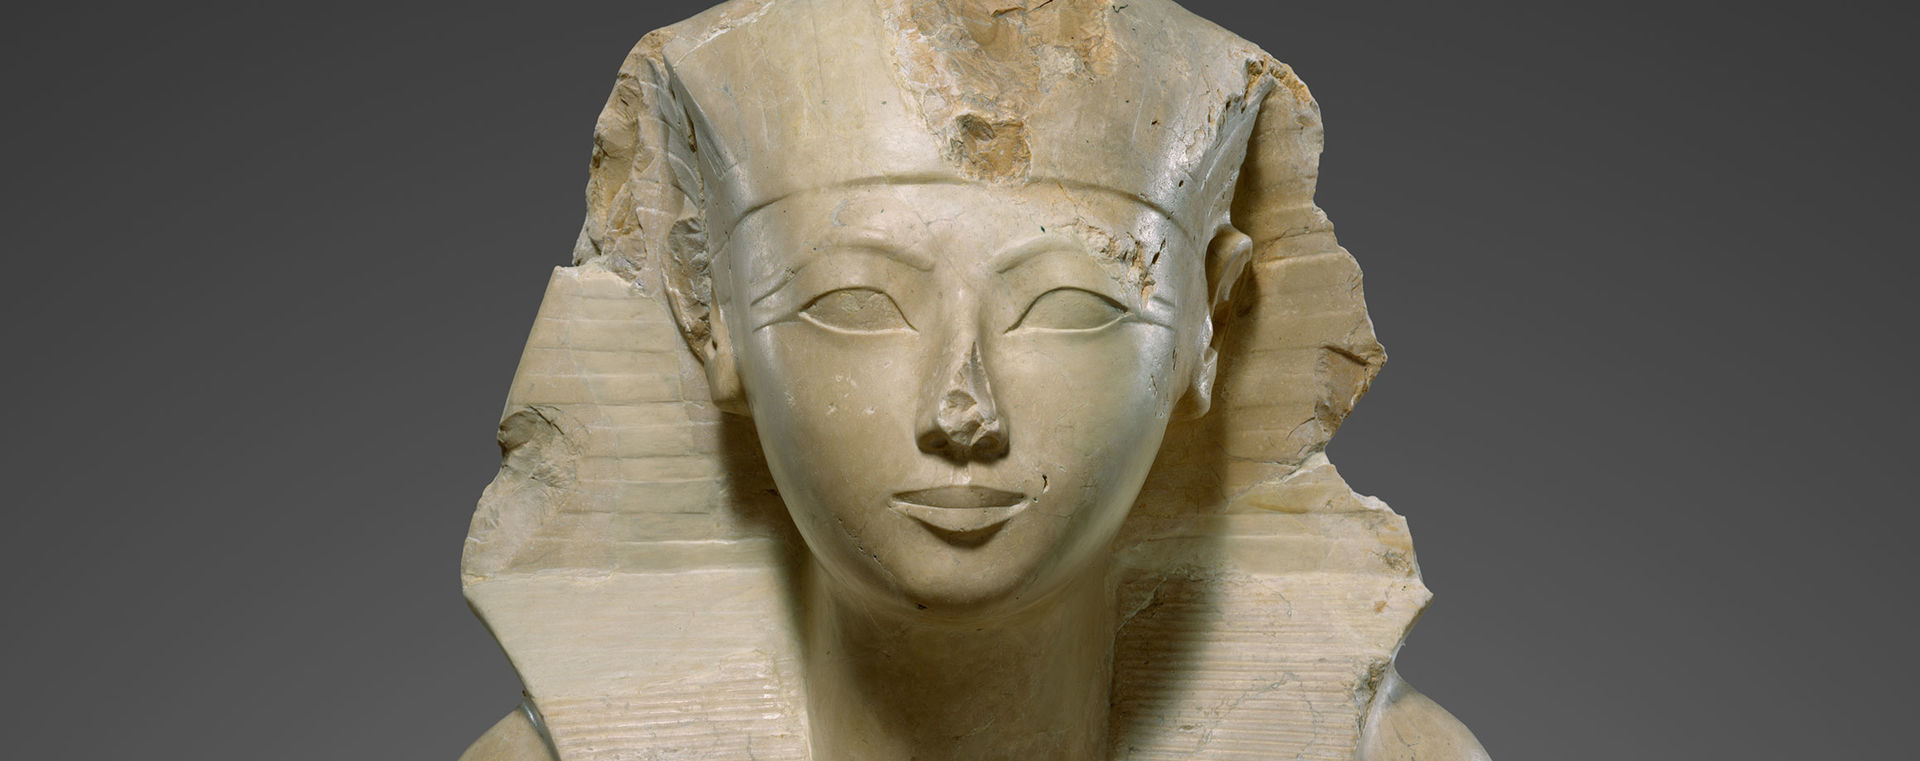 حتشبسوت: المرأة التي أصبحت ملكة مصر